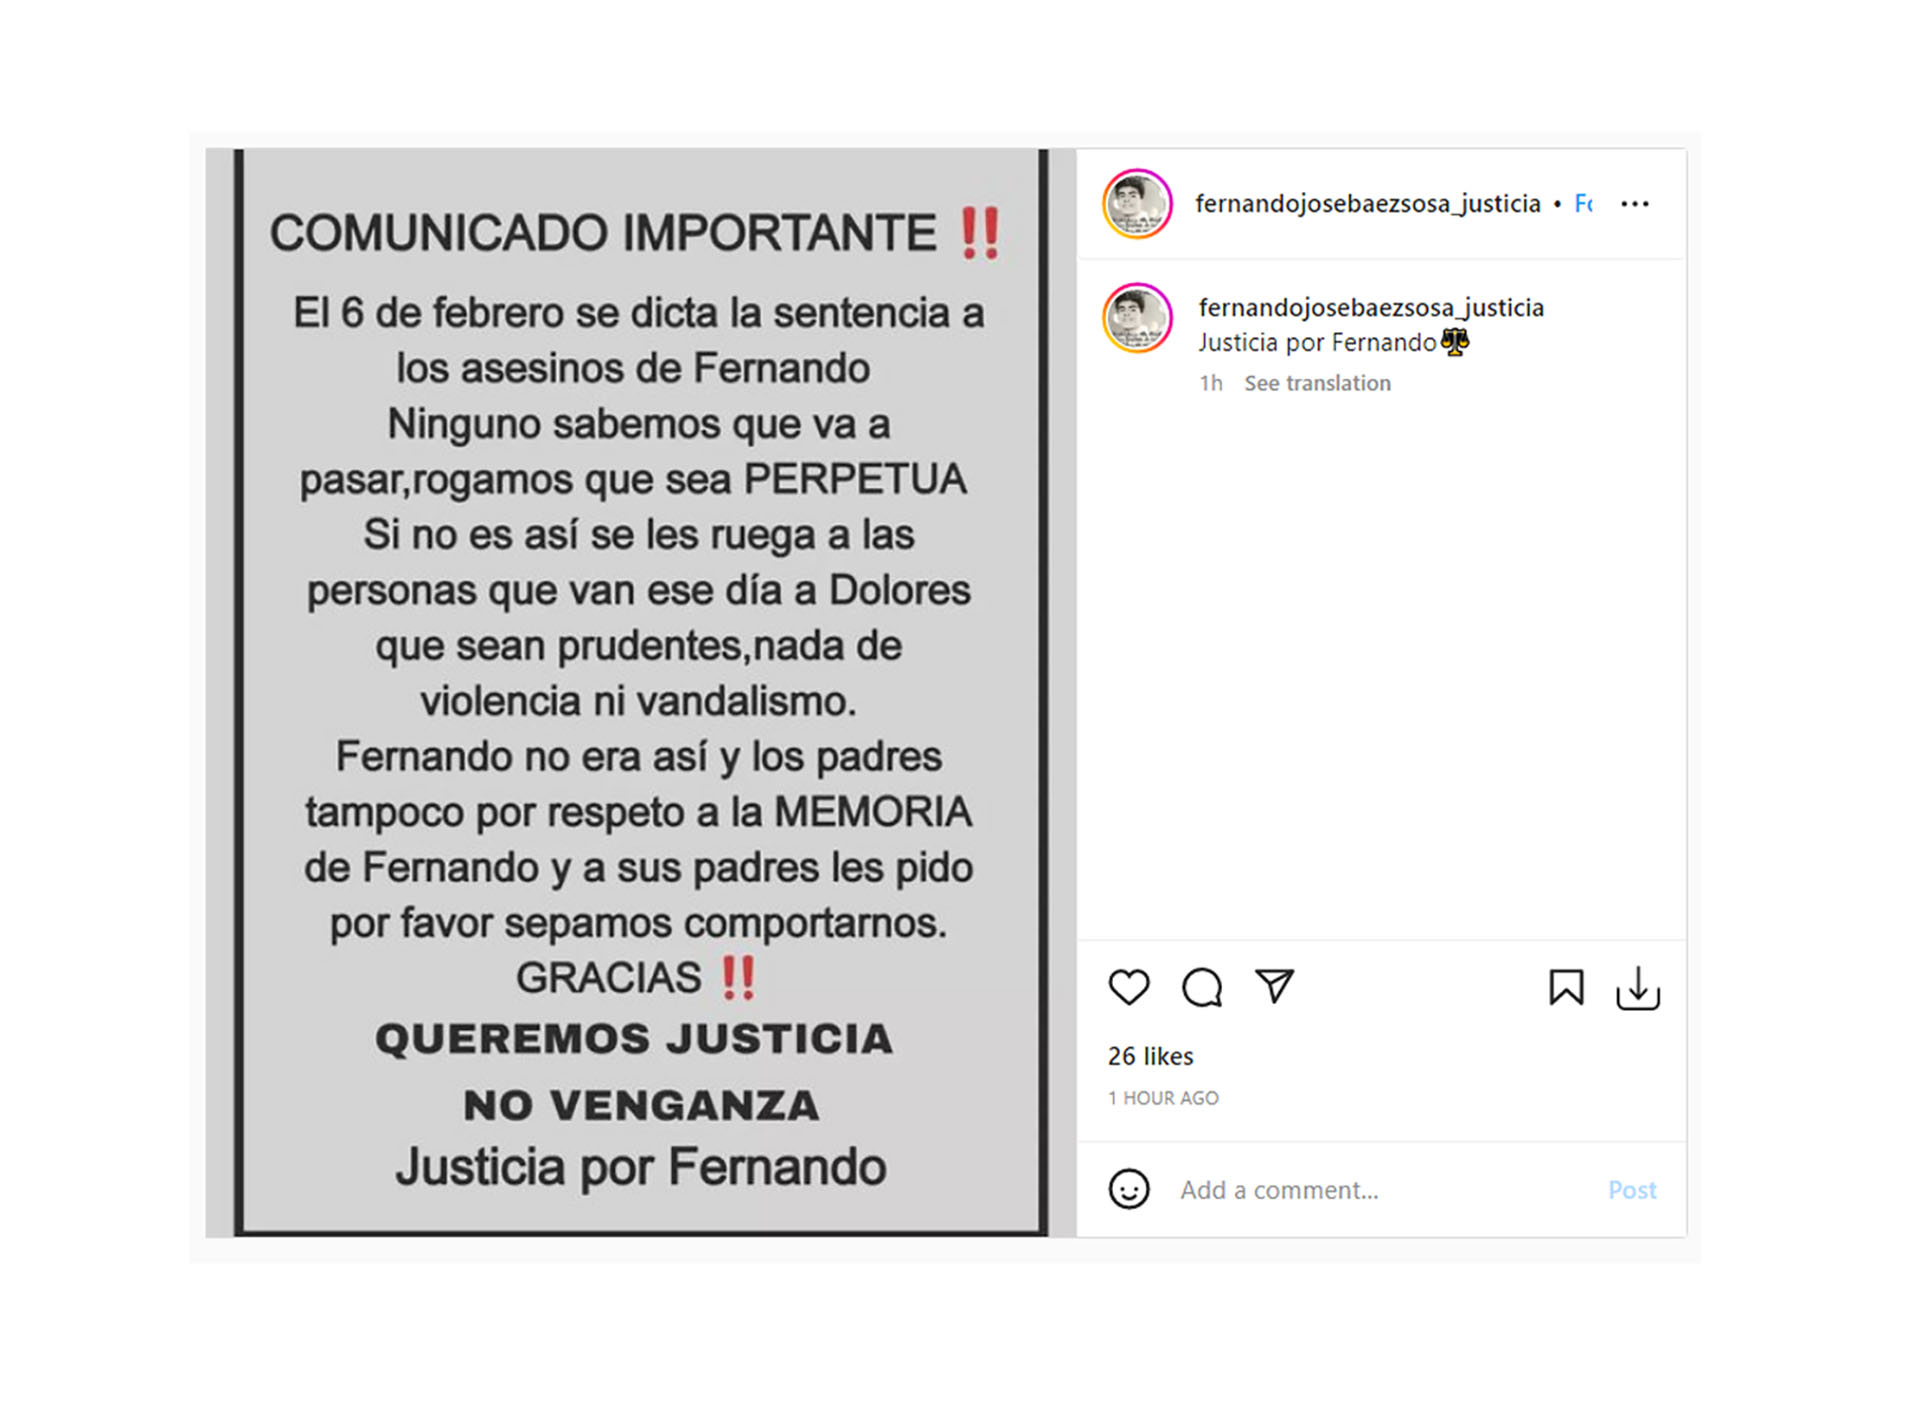 Distintas páginas que piden "Justicia por Fernando" solicitaron “prudencia” a las personas que van a estar presentes en la ciudad de Dolores